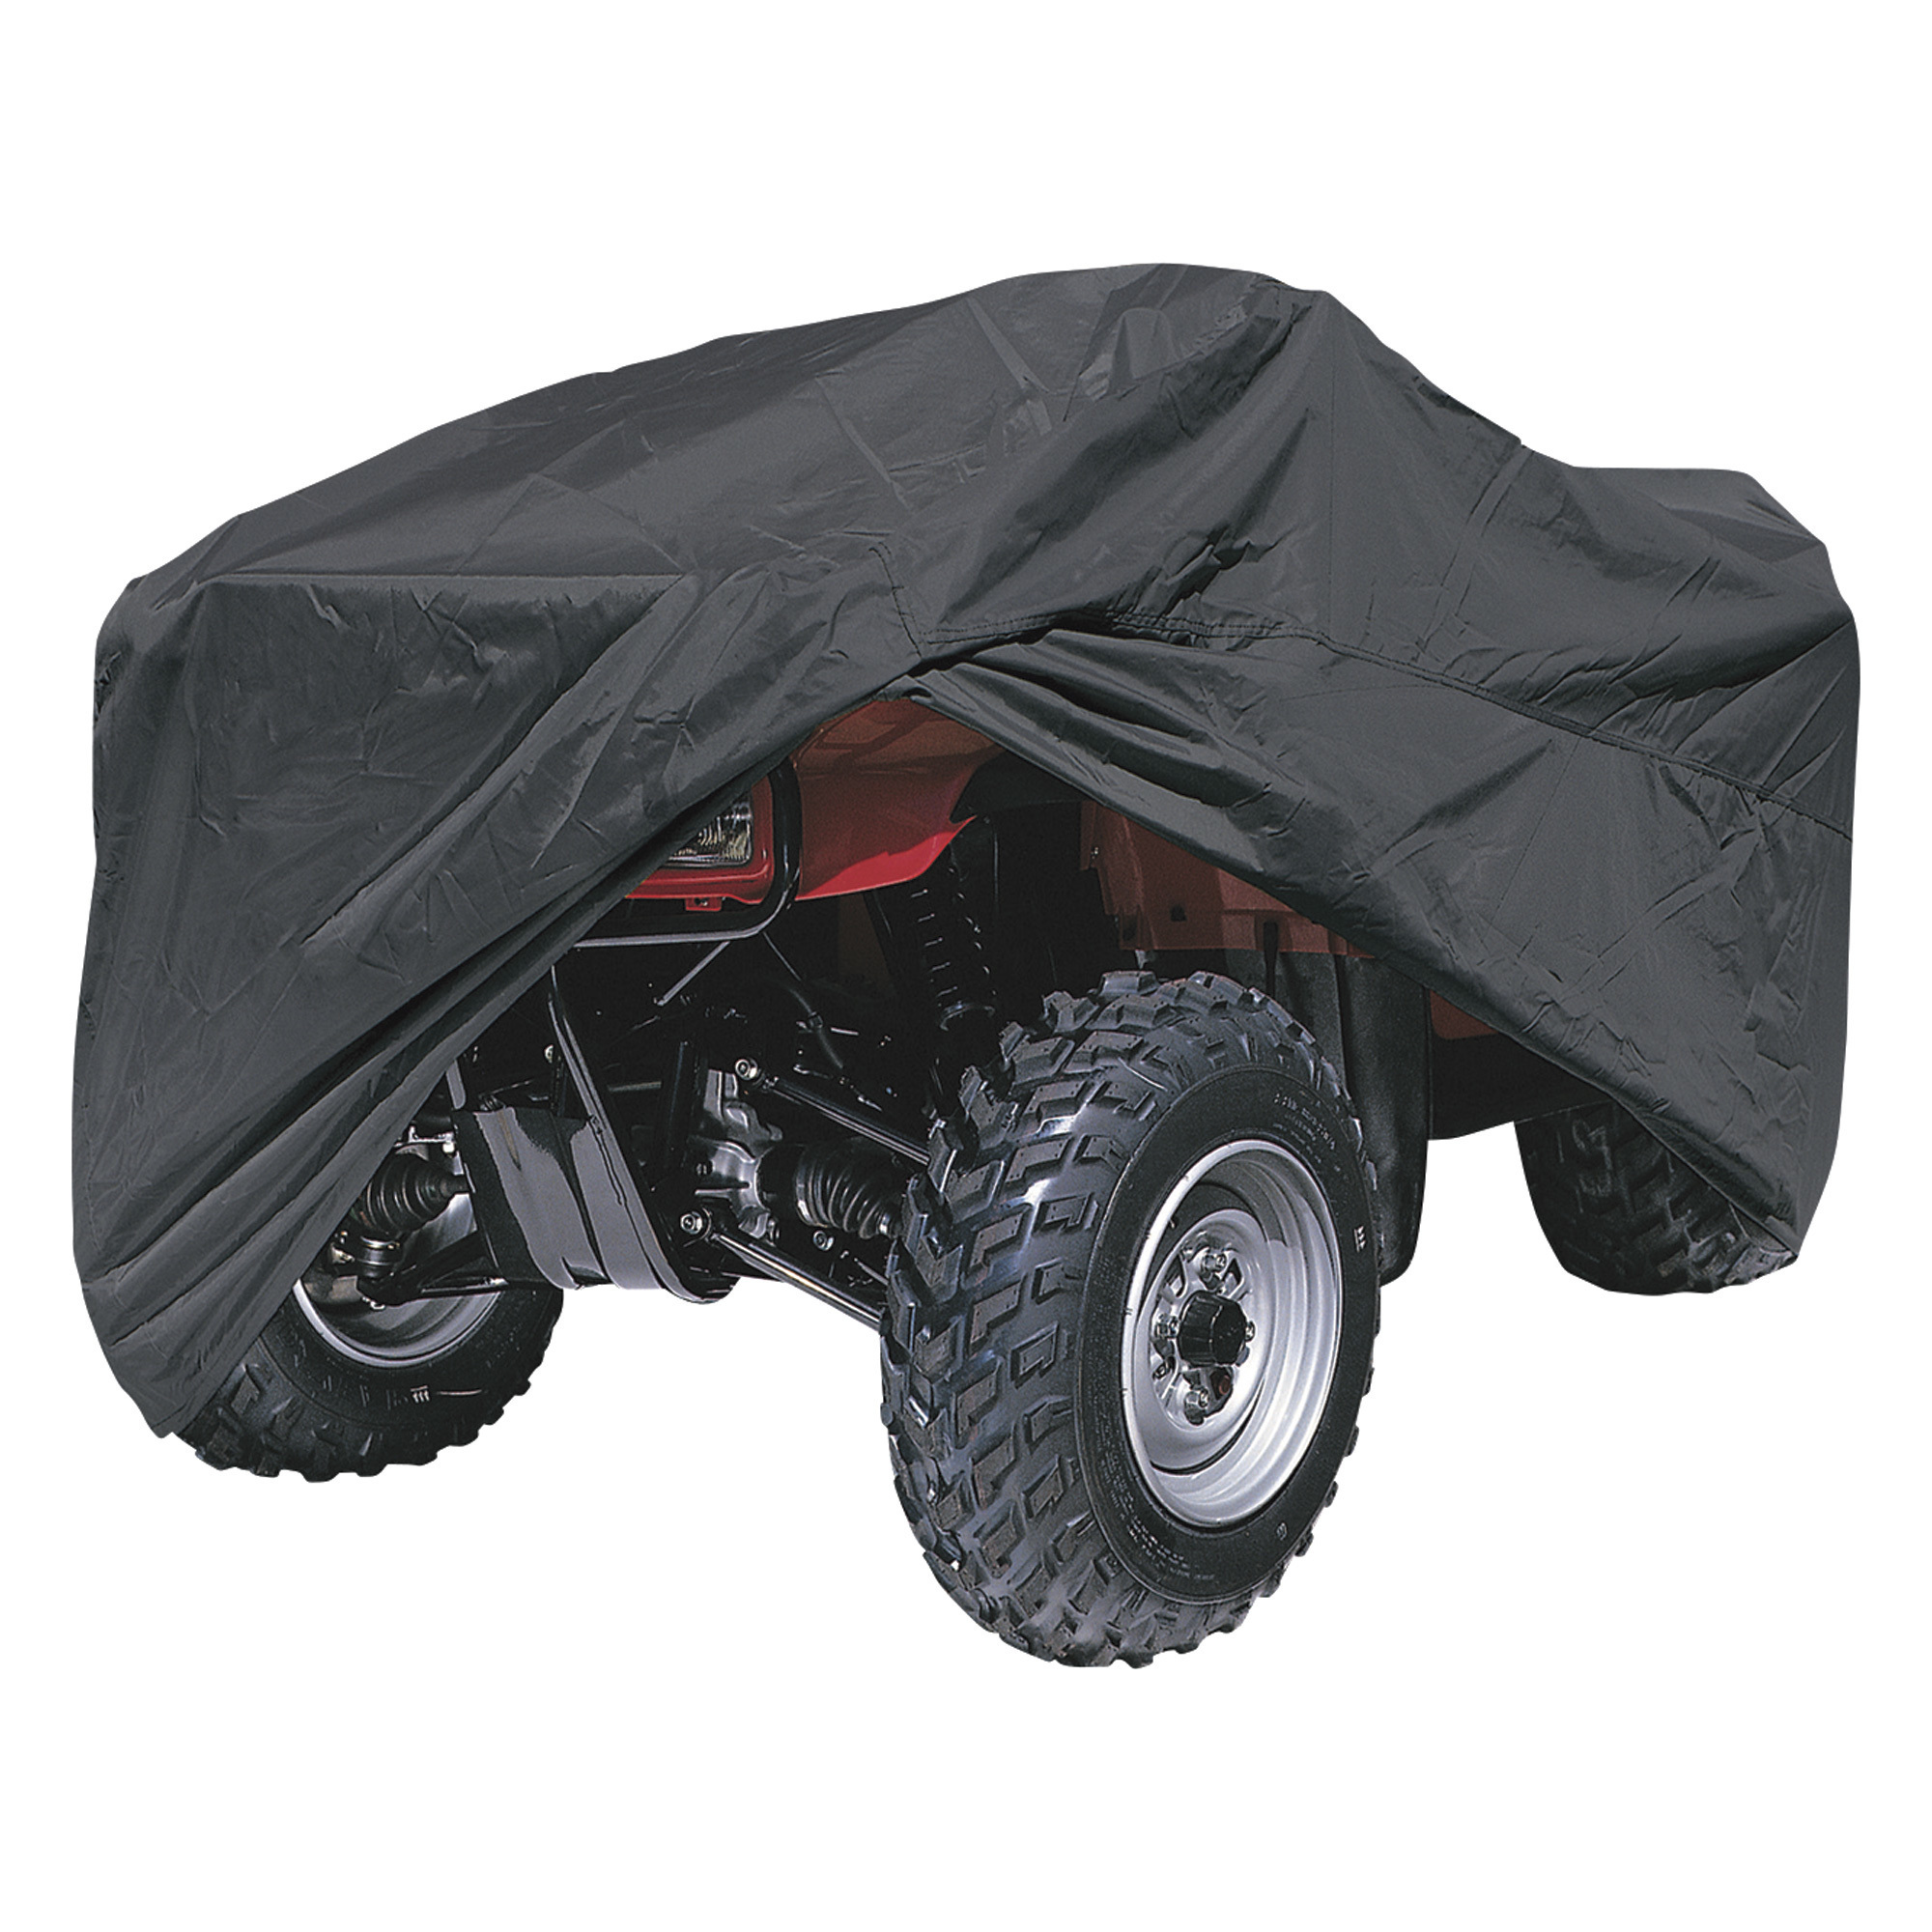 Classic Accessories RiderTech ATV Cover, XL, Black, 85Inch L x 48Inch W x 40Inch H, Model 72047